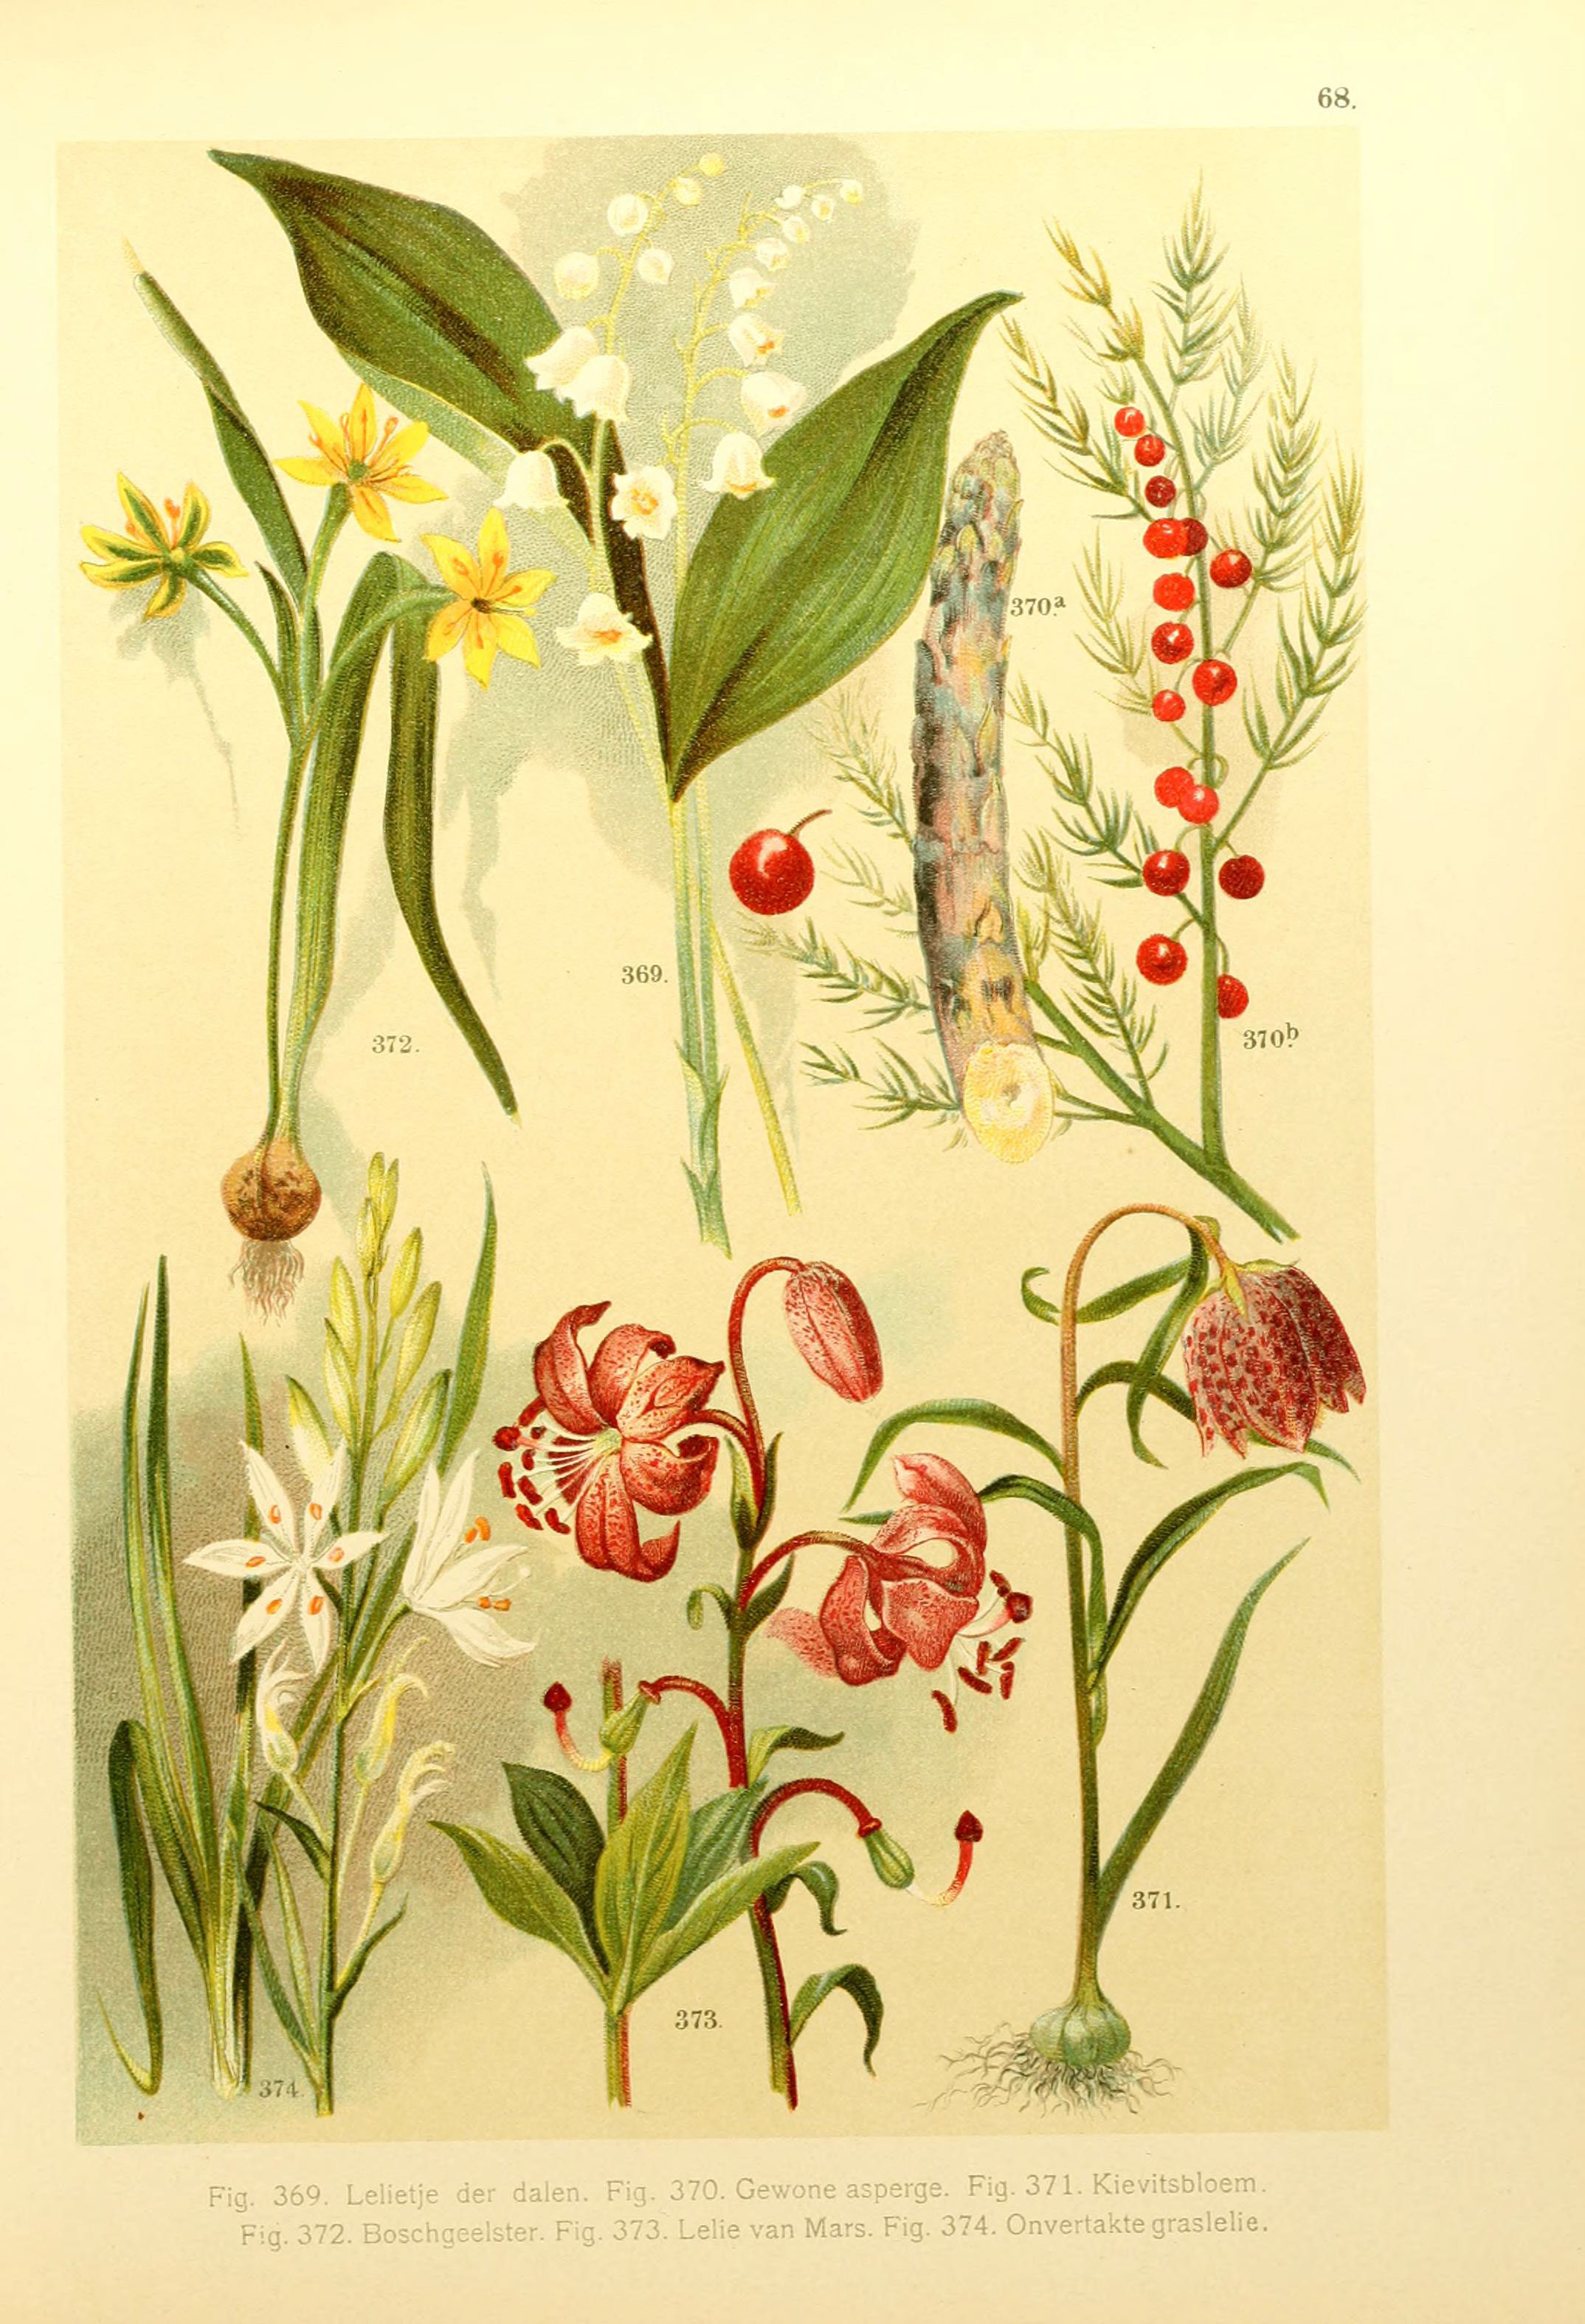 Onze flora Zutphen,W.J. Thieme,1900. http://biodiversitylibrary.org/item/39998